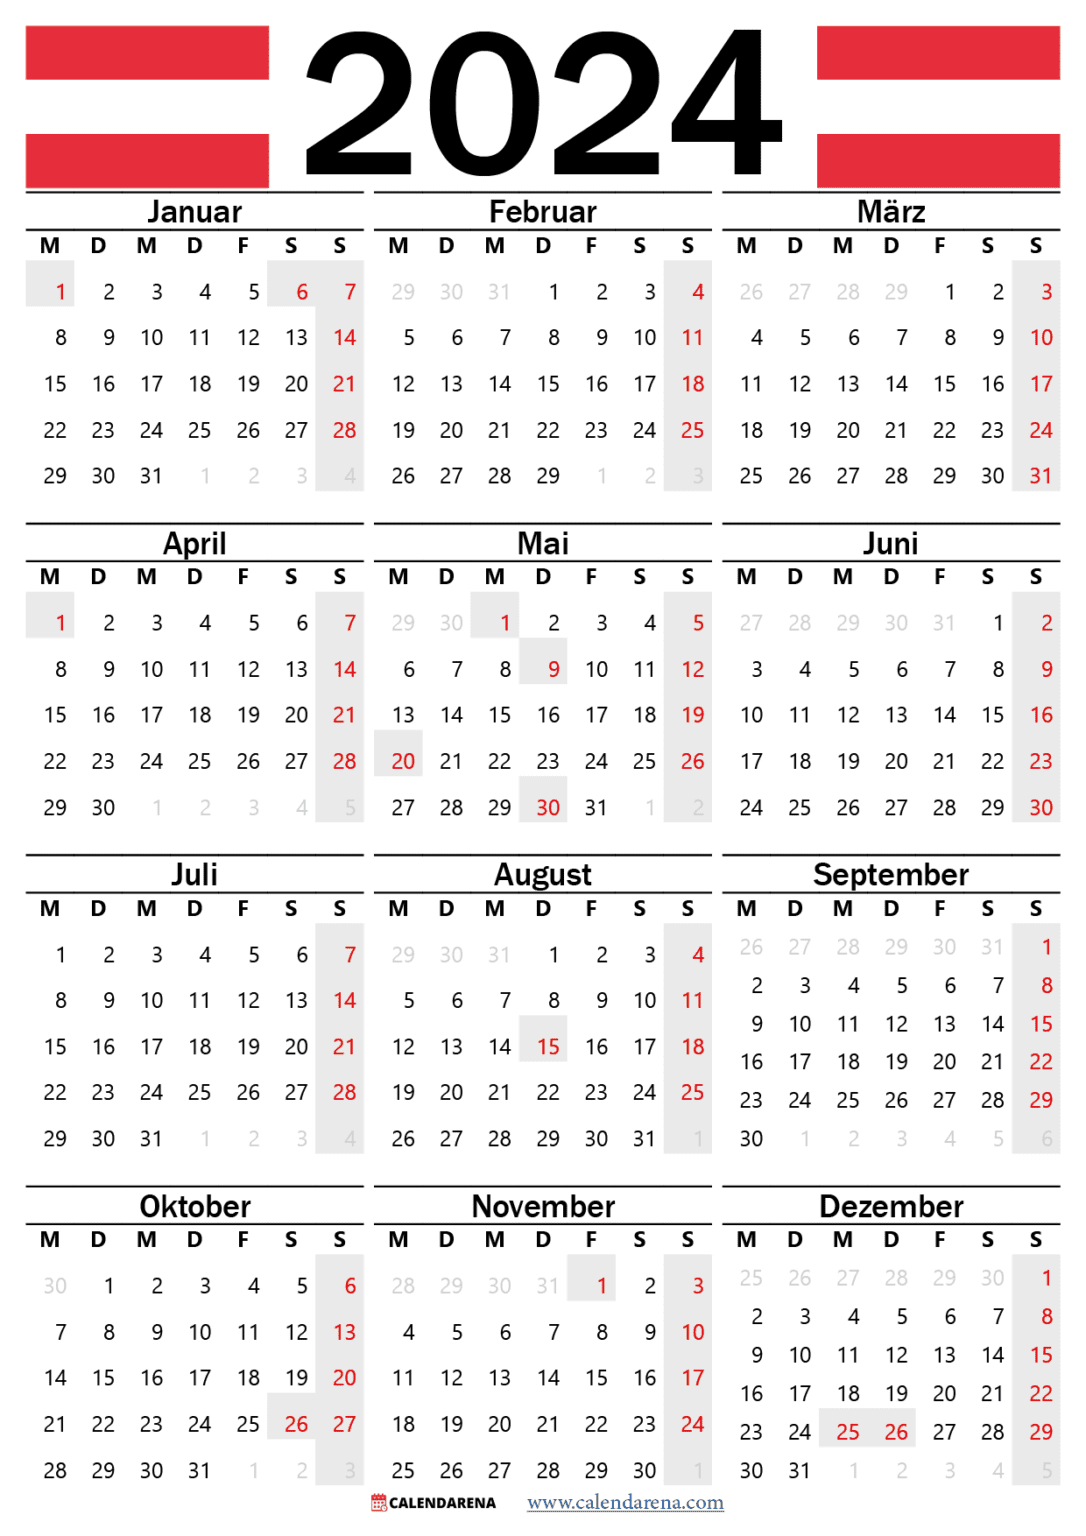 Kalender 2023 österreich Zum Ausdrucken Mit Feiertagen